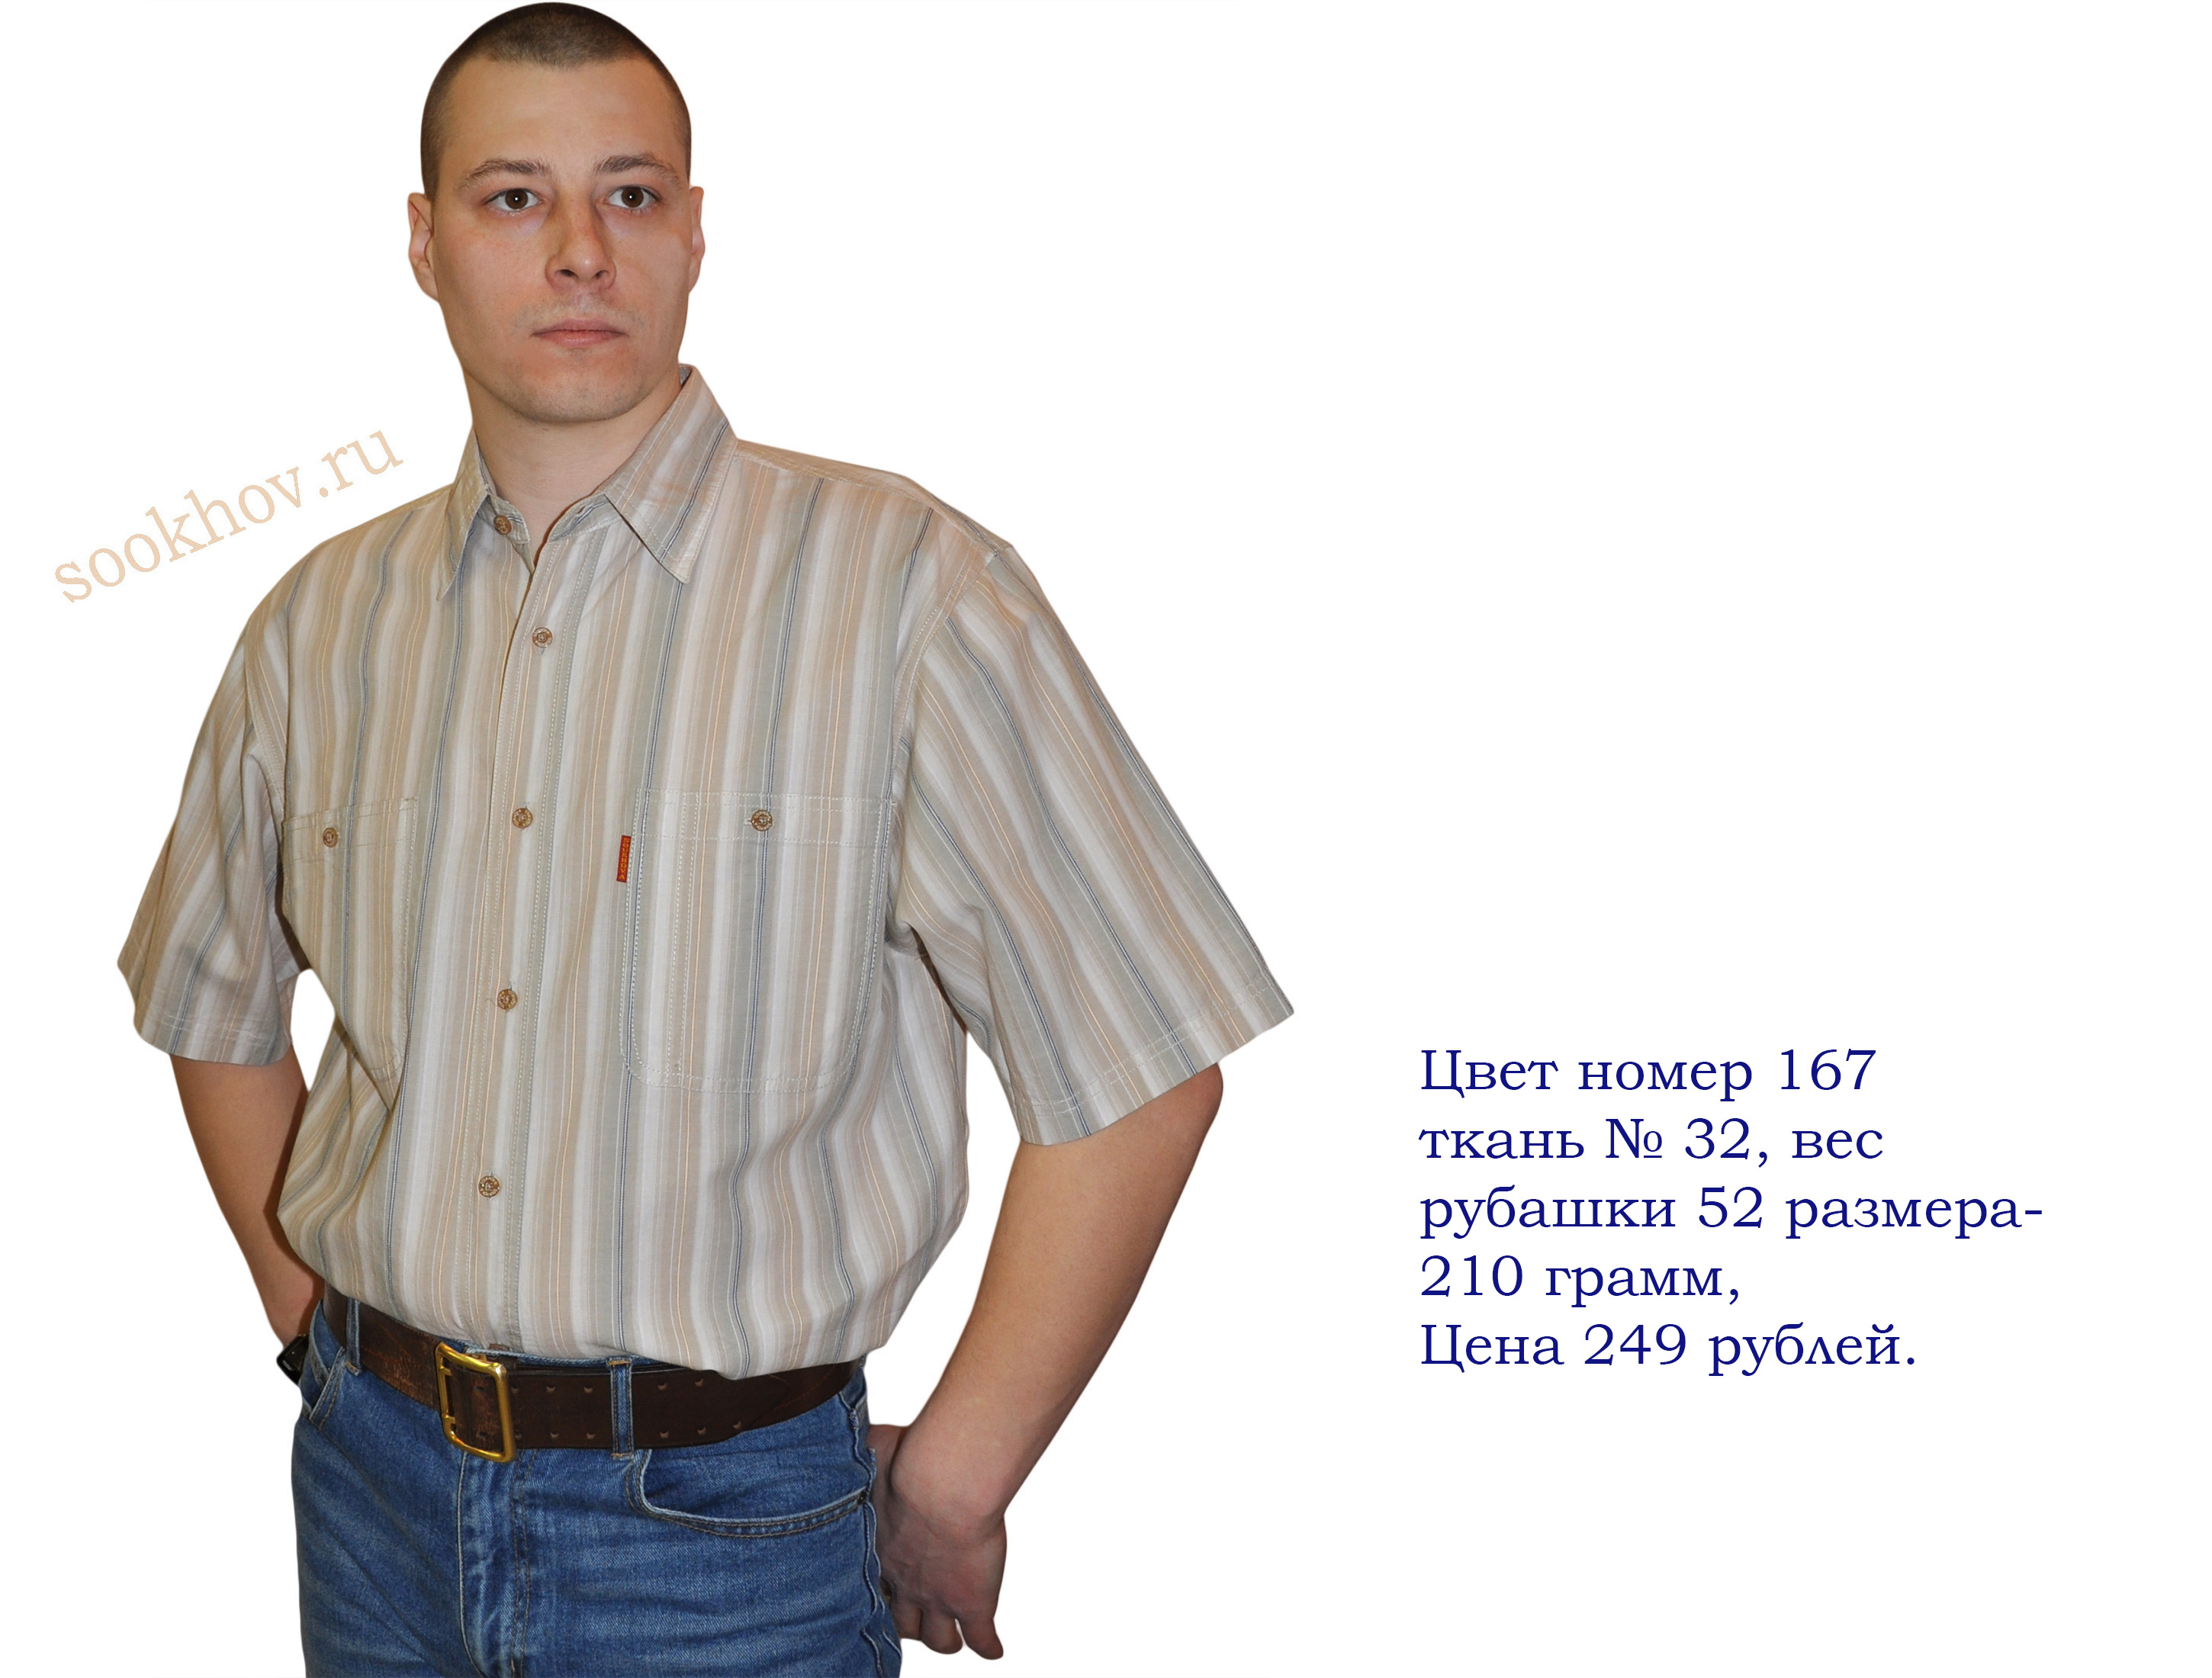 Название мужских рубашек. Джинсовые рубашки мужские больших размеров с коротким рукавом. Рубашка мужская с коротким большой размер. Рубашка в полоску бежевая мужская. Рубашка с коротким рукавом из 90.